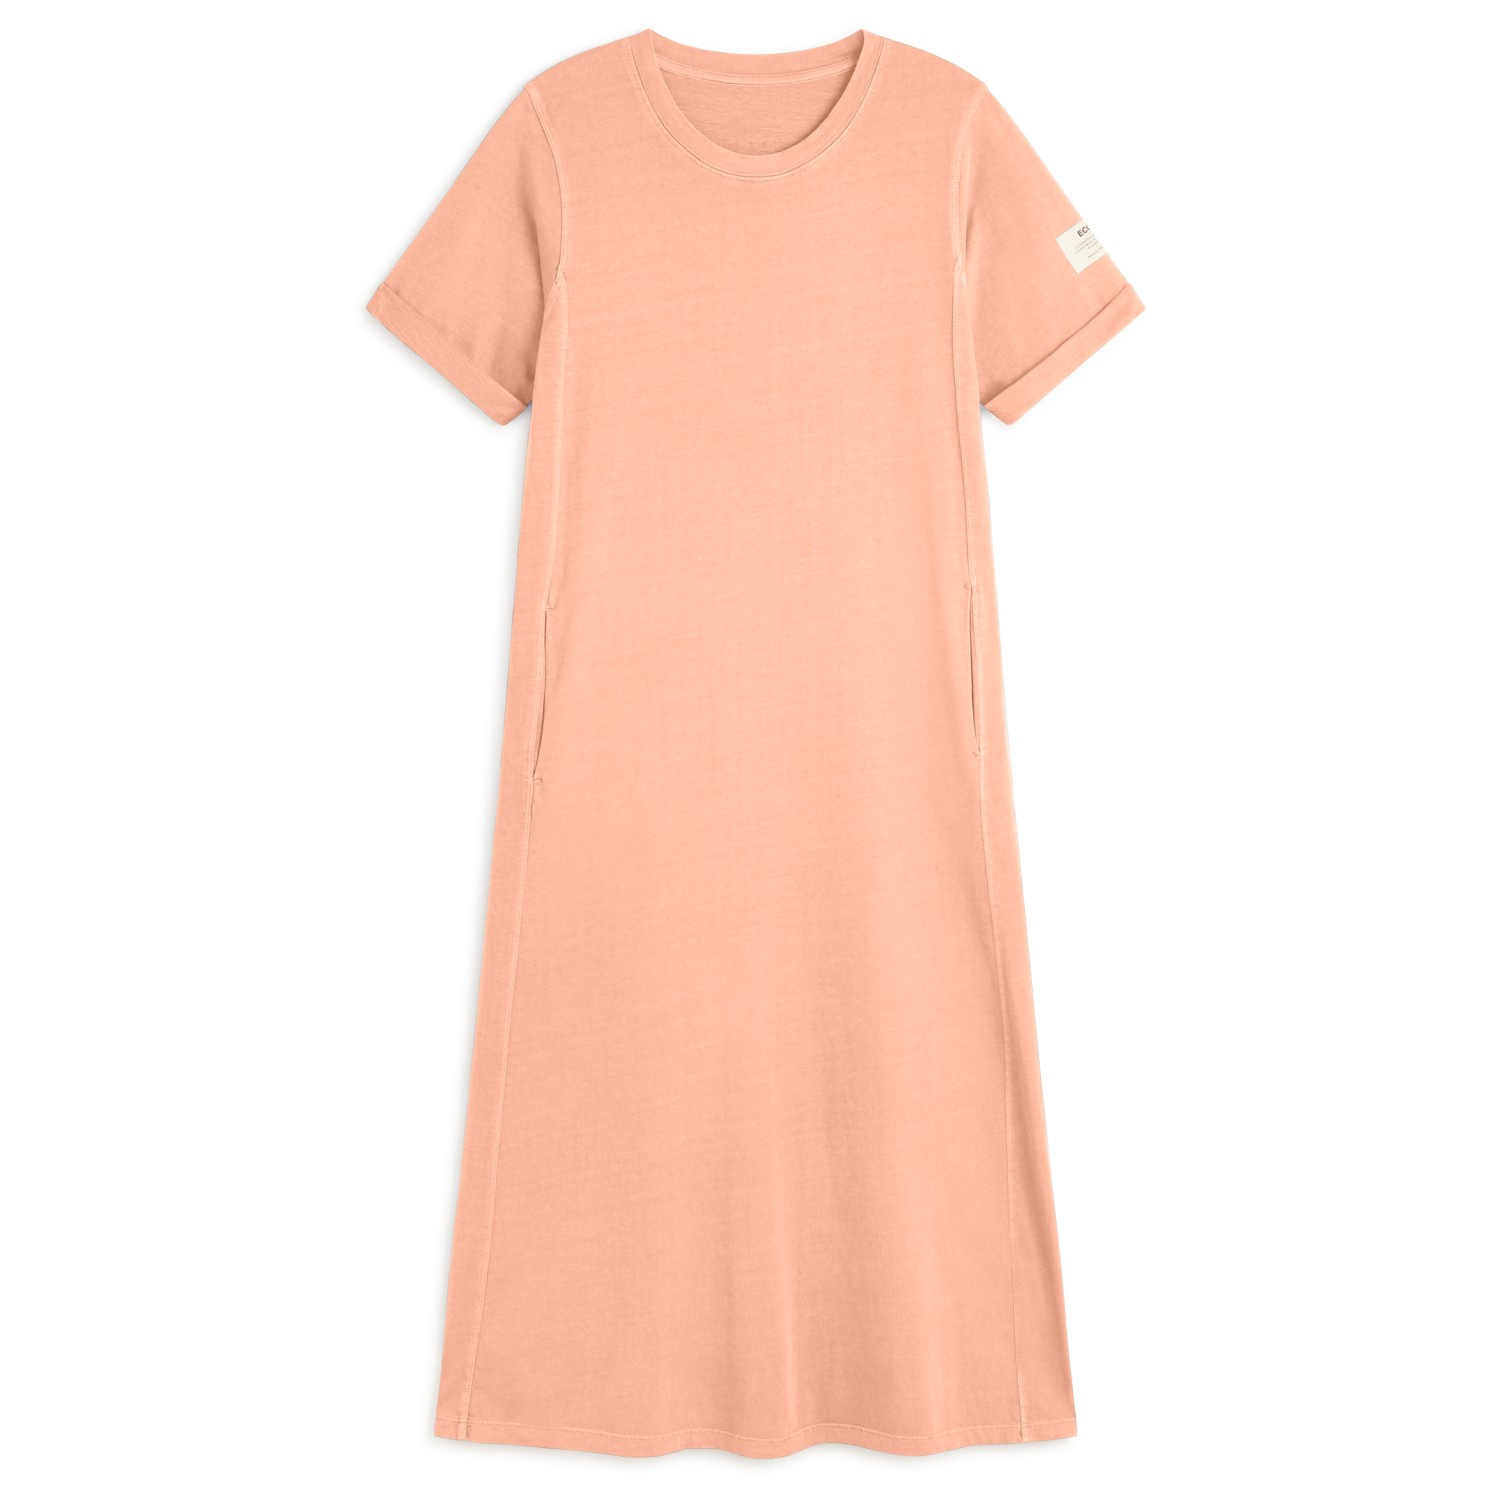 Платье Ecoalf Women's Argentoalf Dress, цвет Soft Coral платье твоё повседневное 44 размер